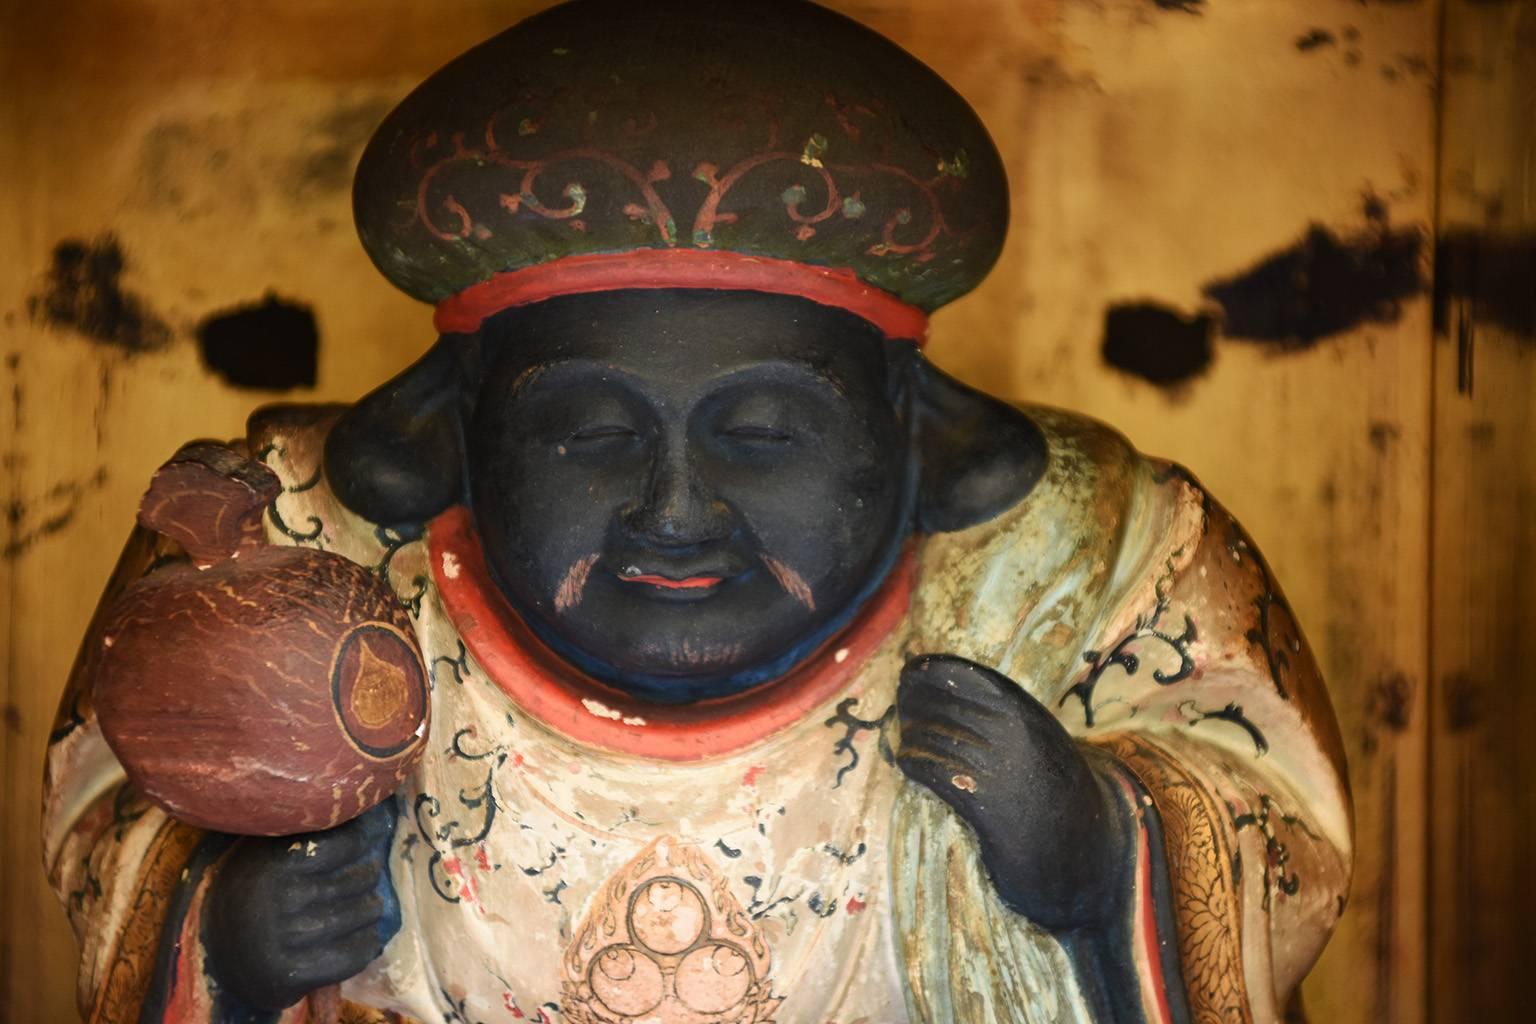 Seltene japanische antike Statue des Daikoku in einem schwarz lackierten Zushi mit vergoldetem Interieur:: Edo-Zeit:: 18. Jahrhundert. 

In der japanischen Mythologie ist Daikoku der Gott des Reichtums und Beschützer der Bauern. In der Regel trägt